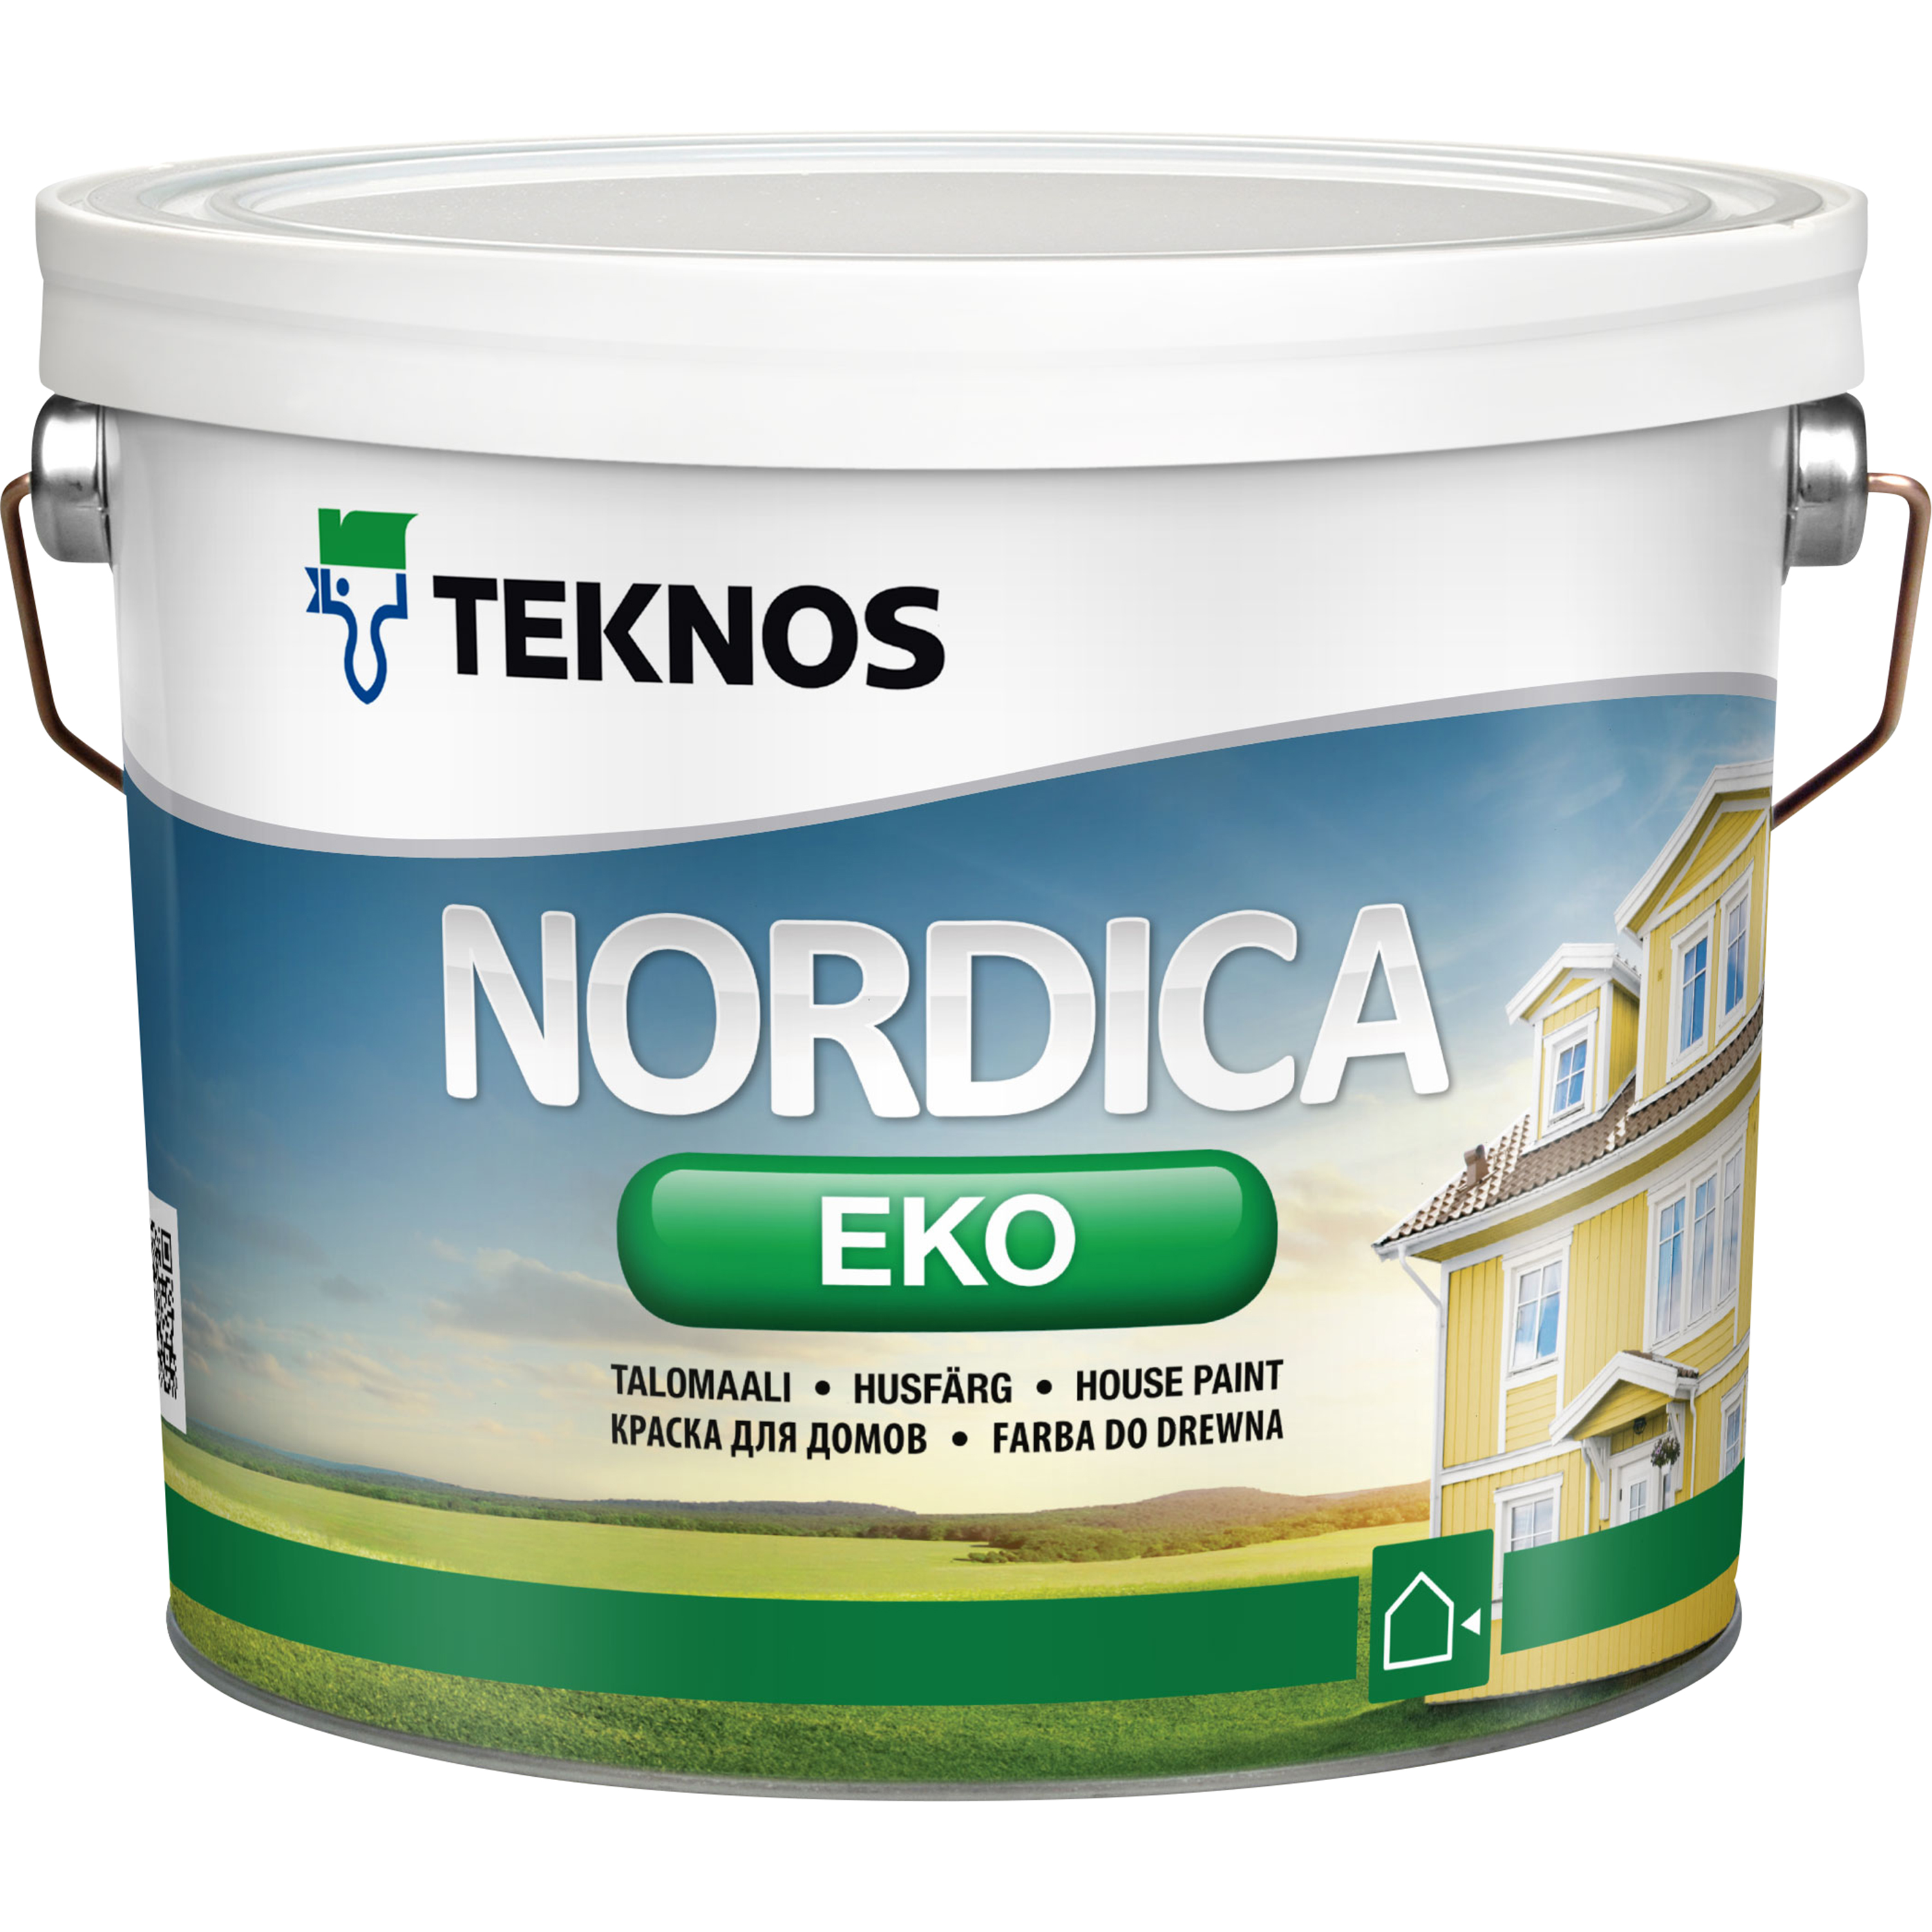 Teknos Husfärg Nordica Eko Bas 1 2,7 l